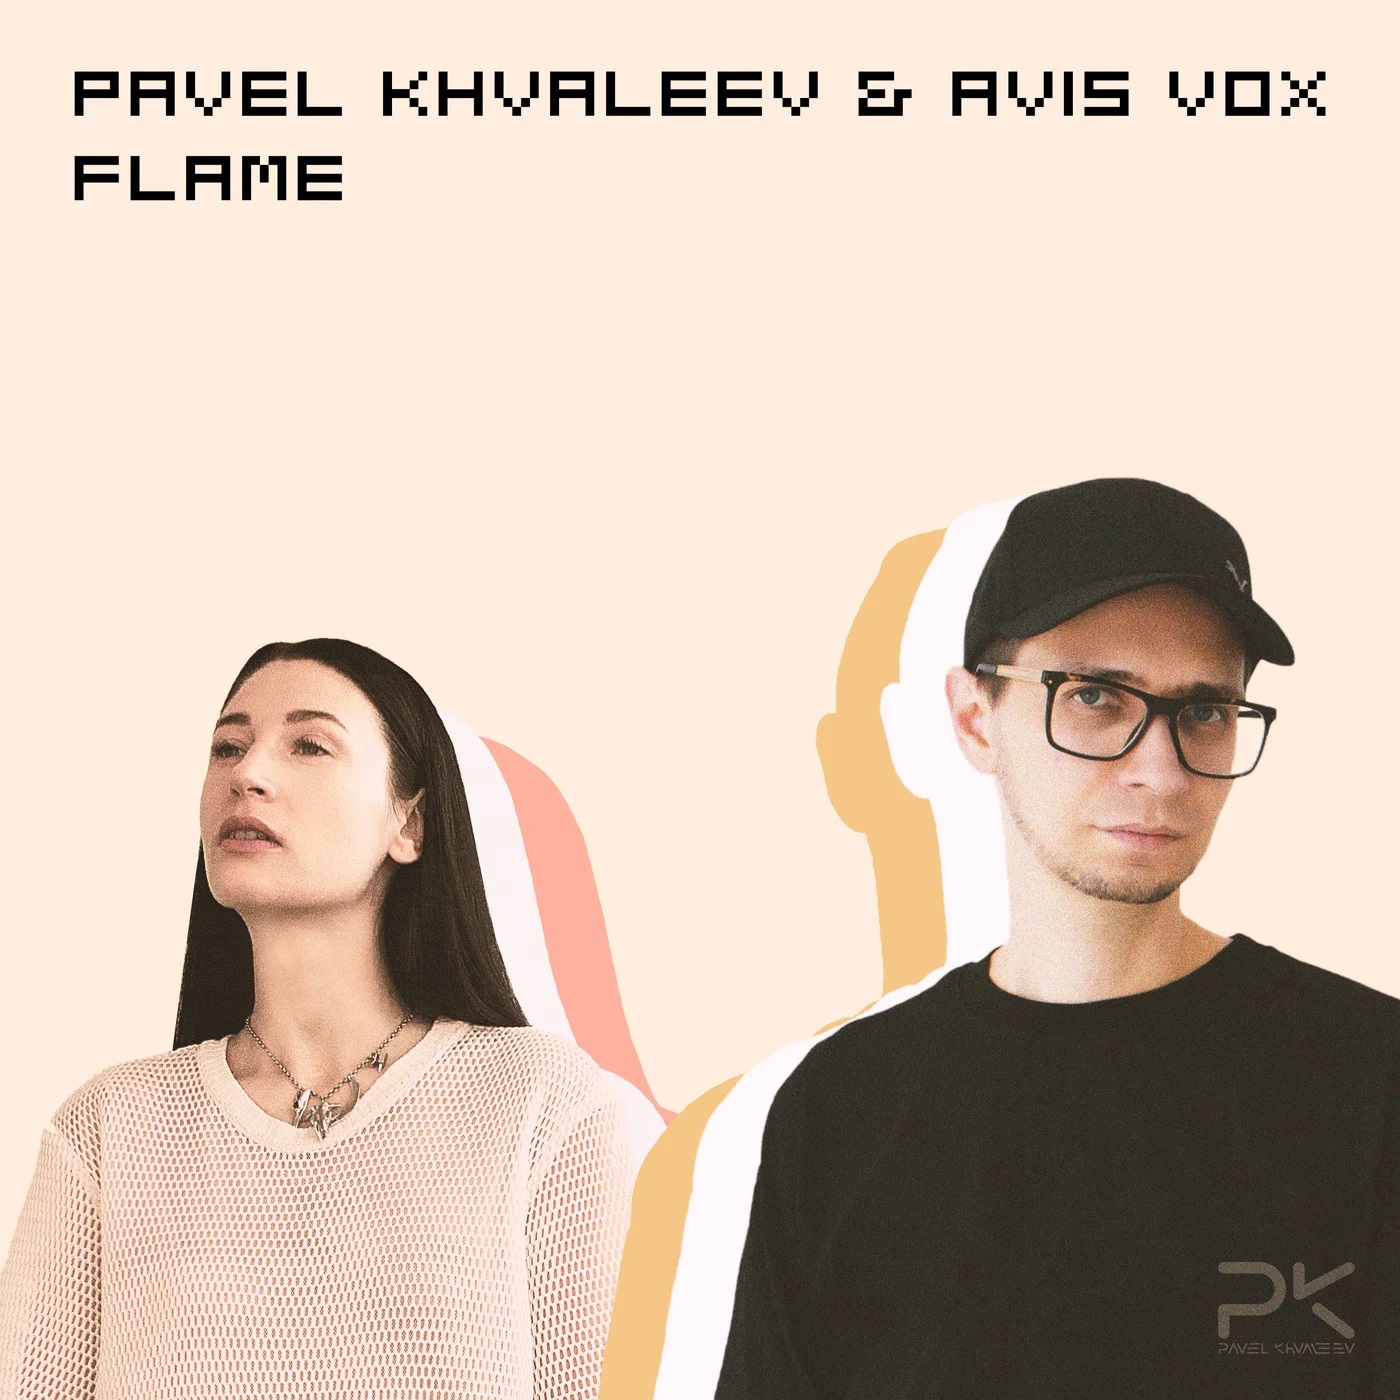 Pavel Khvaleev & Avis Vox - Flame (Extended Mix)